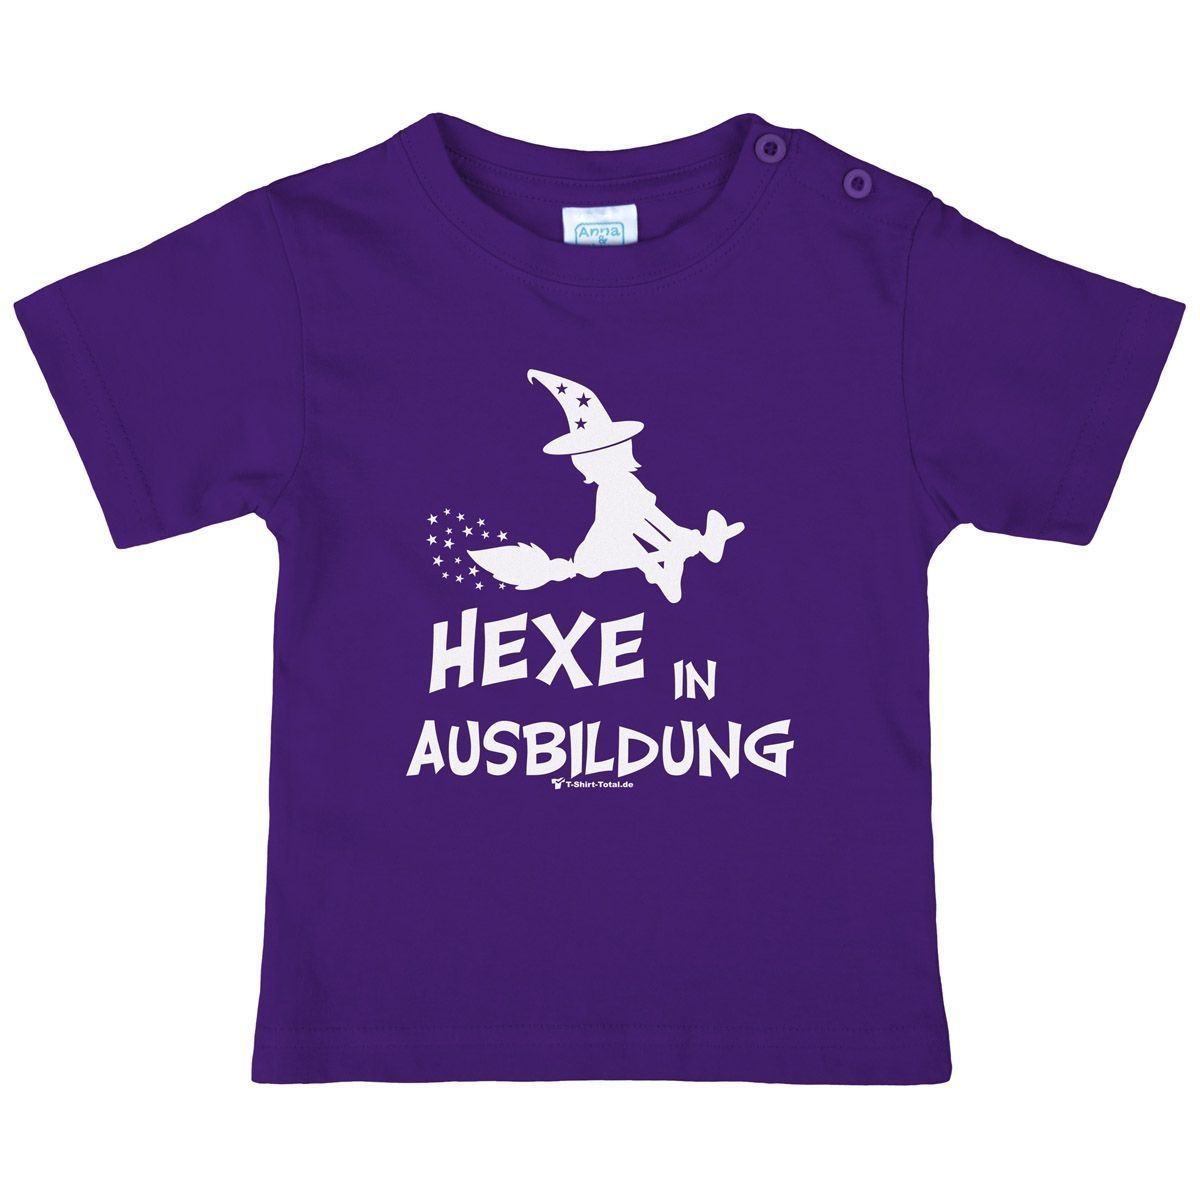 Hexe in Ausbildung Kinder T-Shirt lila 110 / 116